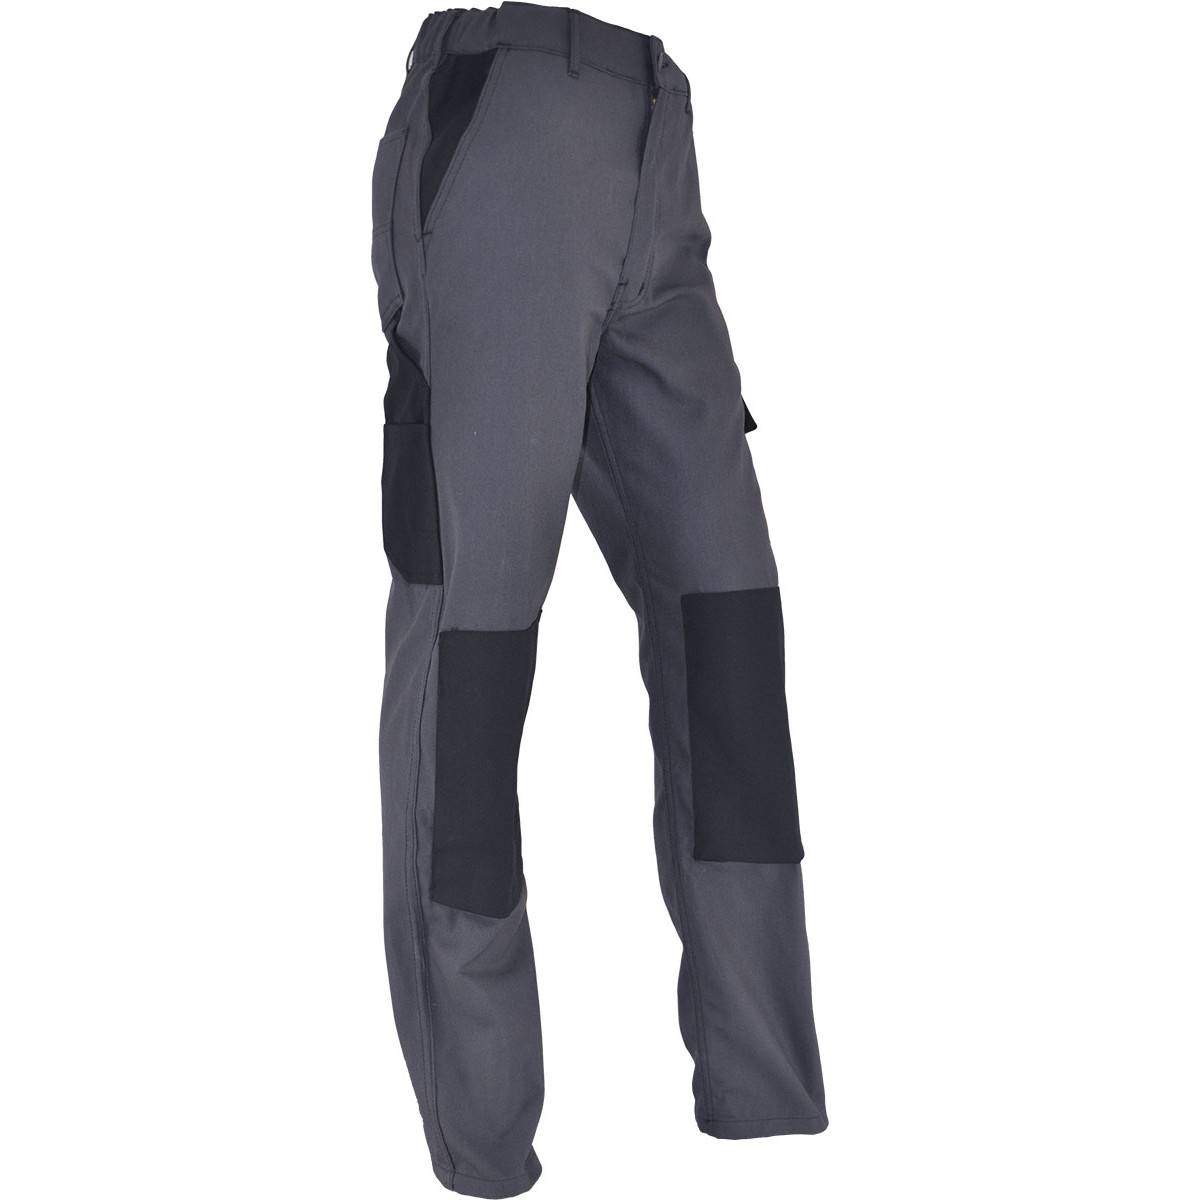 PMPC pantaloni da lavoro comfort taglia 48, grigio antracite